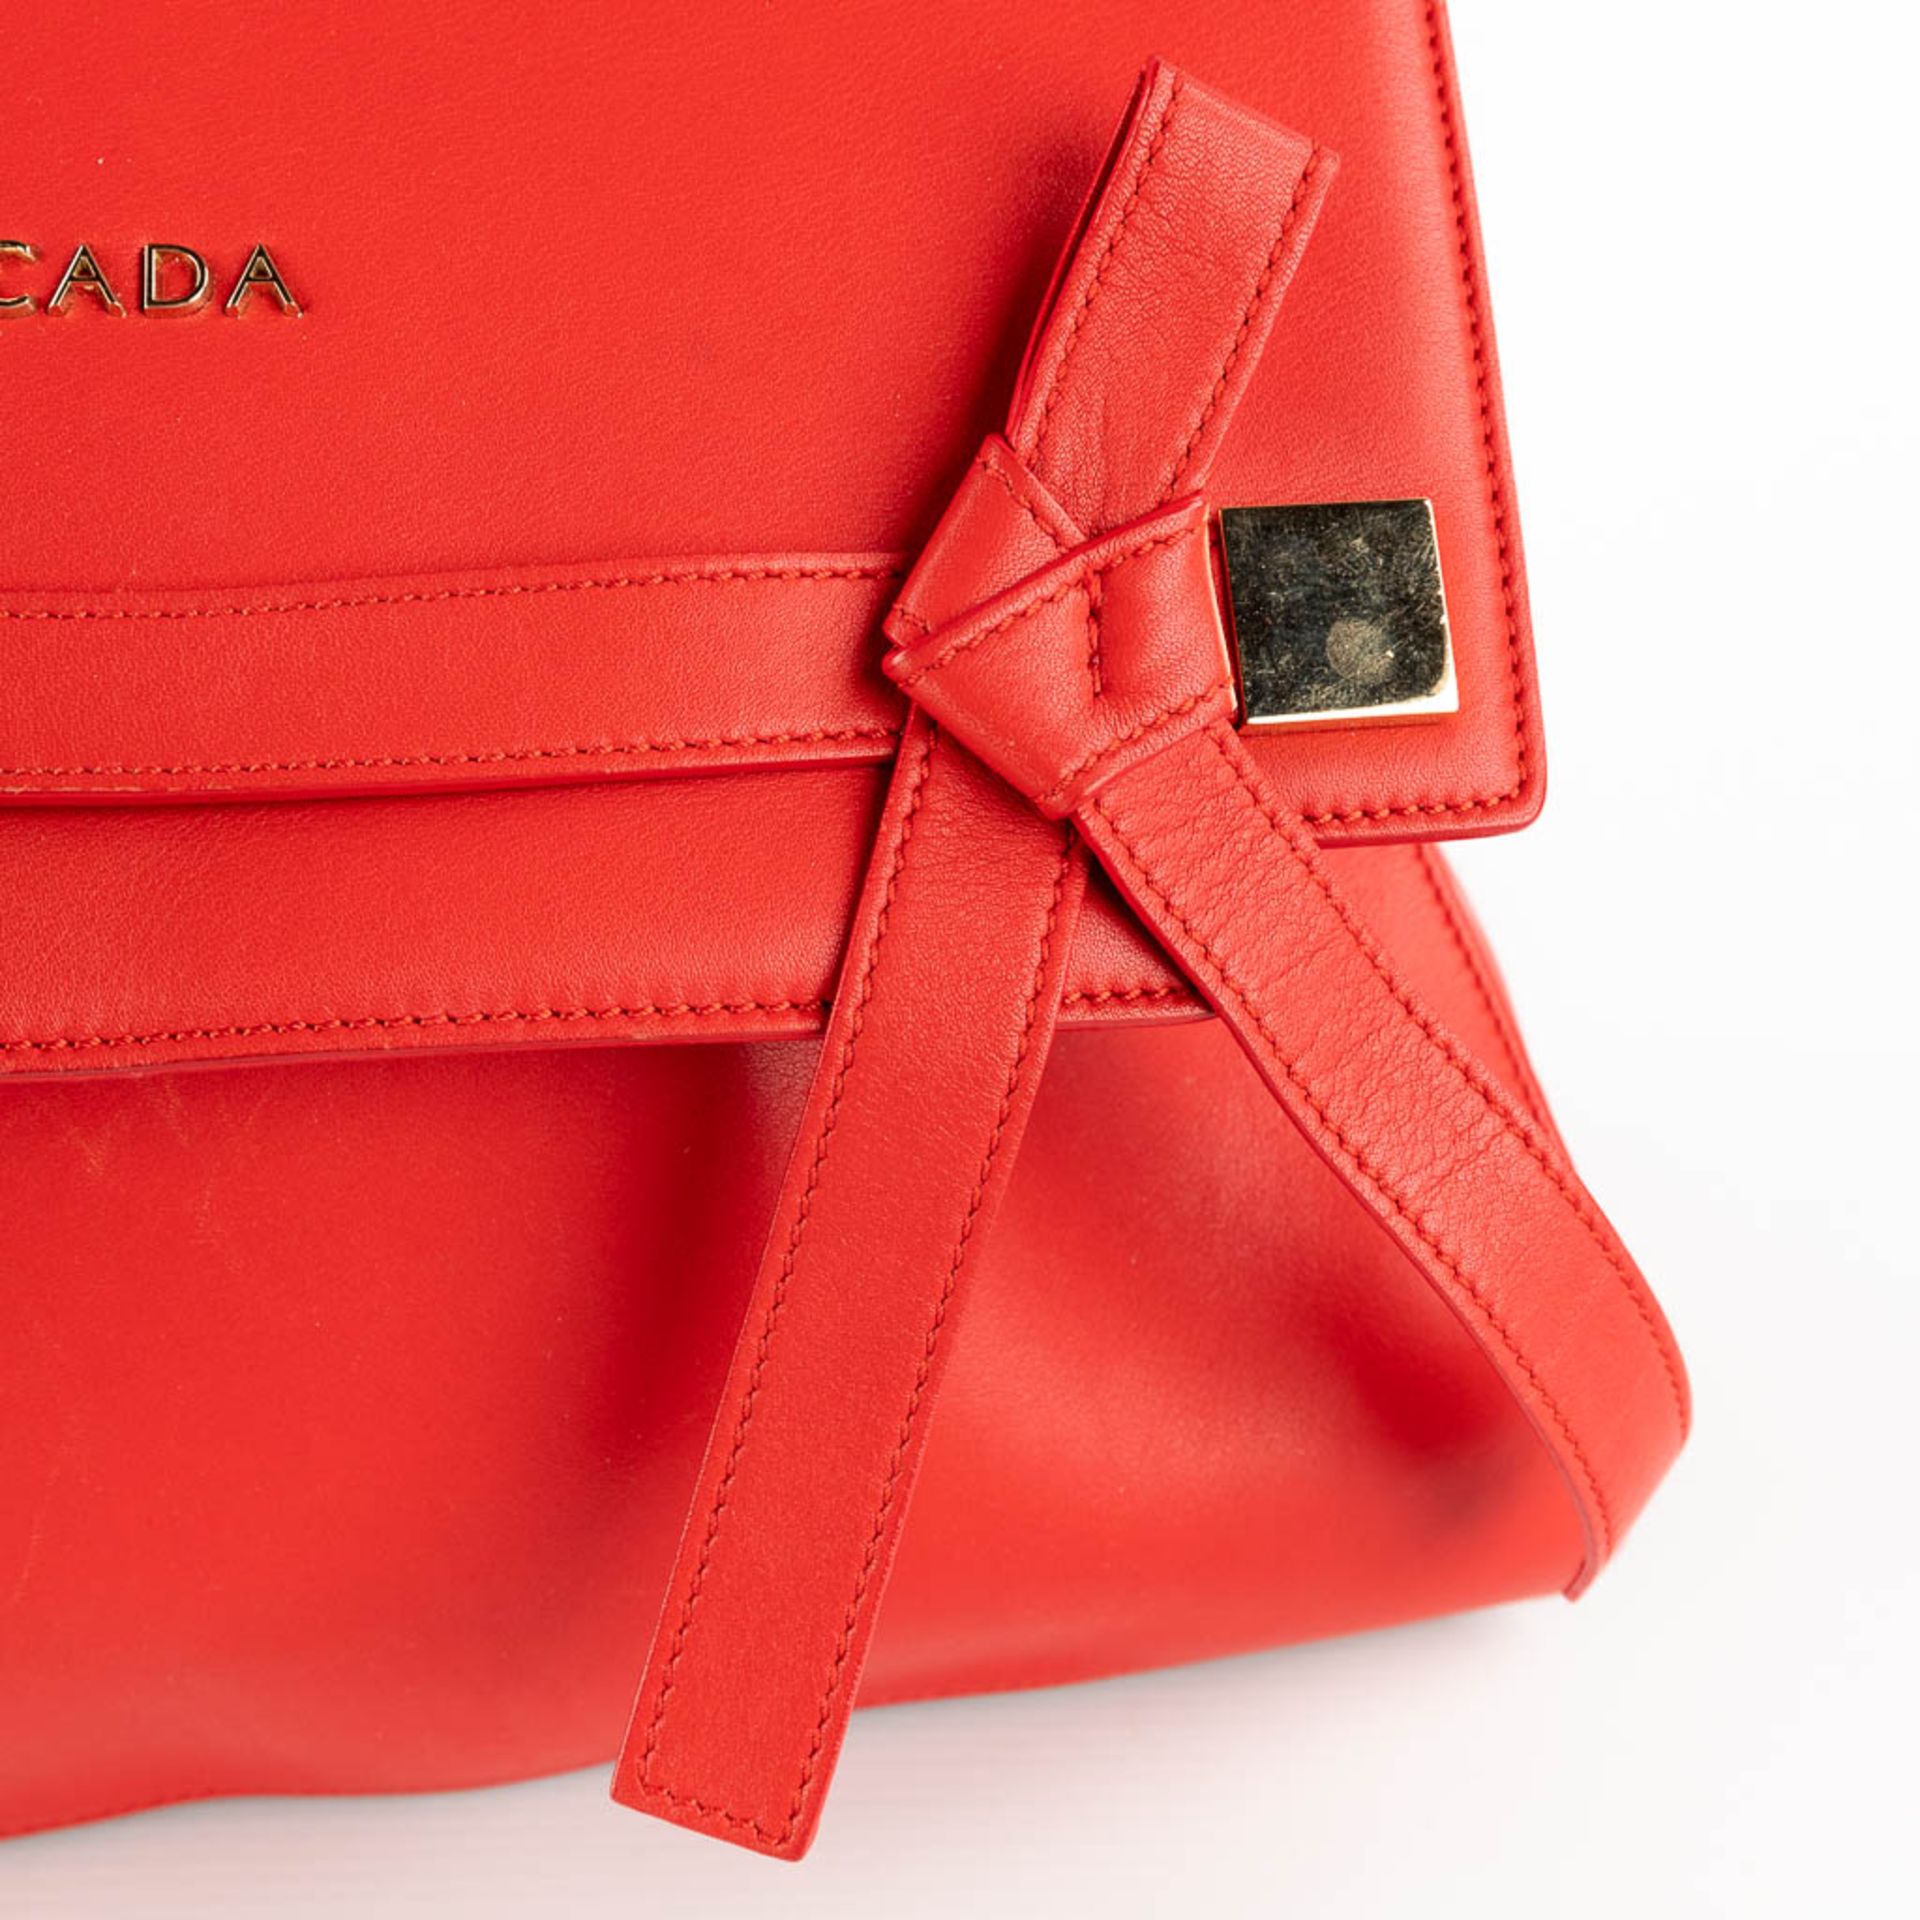 Escada, a handbag made of red leather. (W:33 x H:28 cm) - Bild 12 aus 17